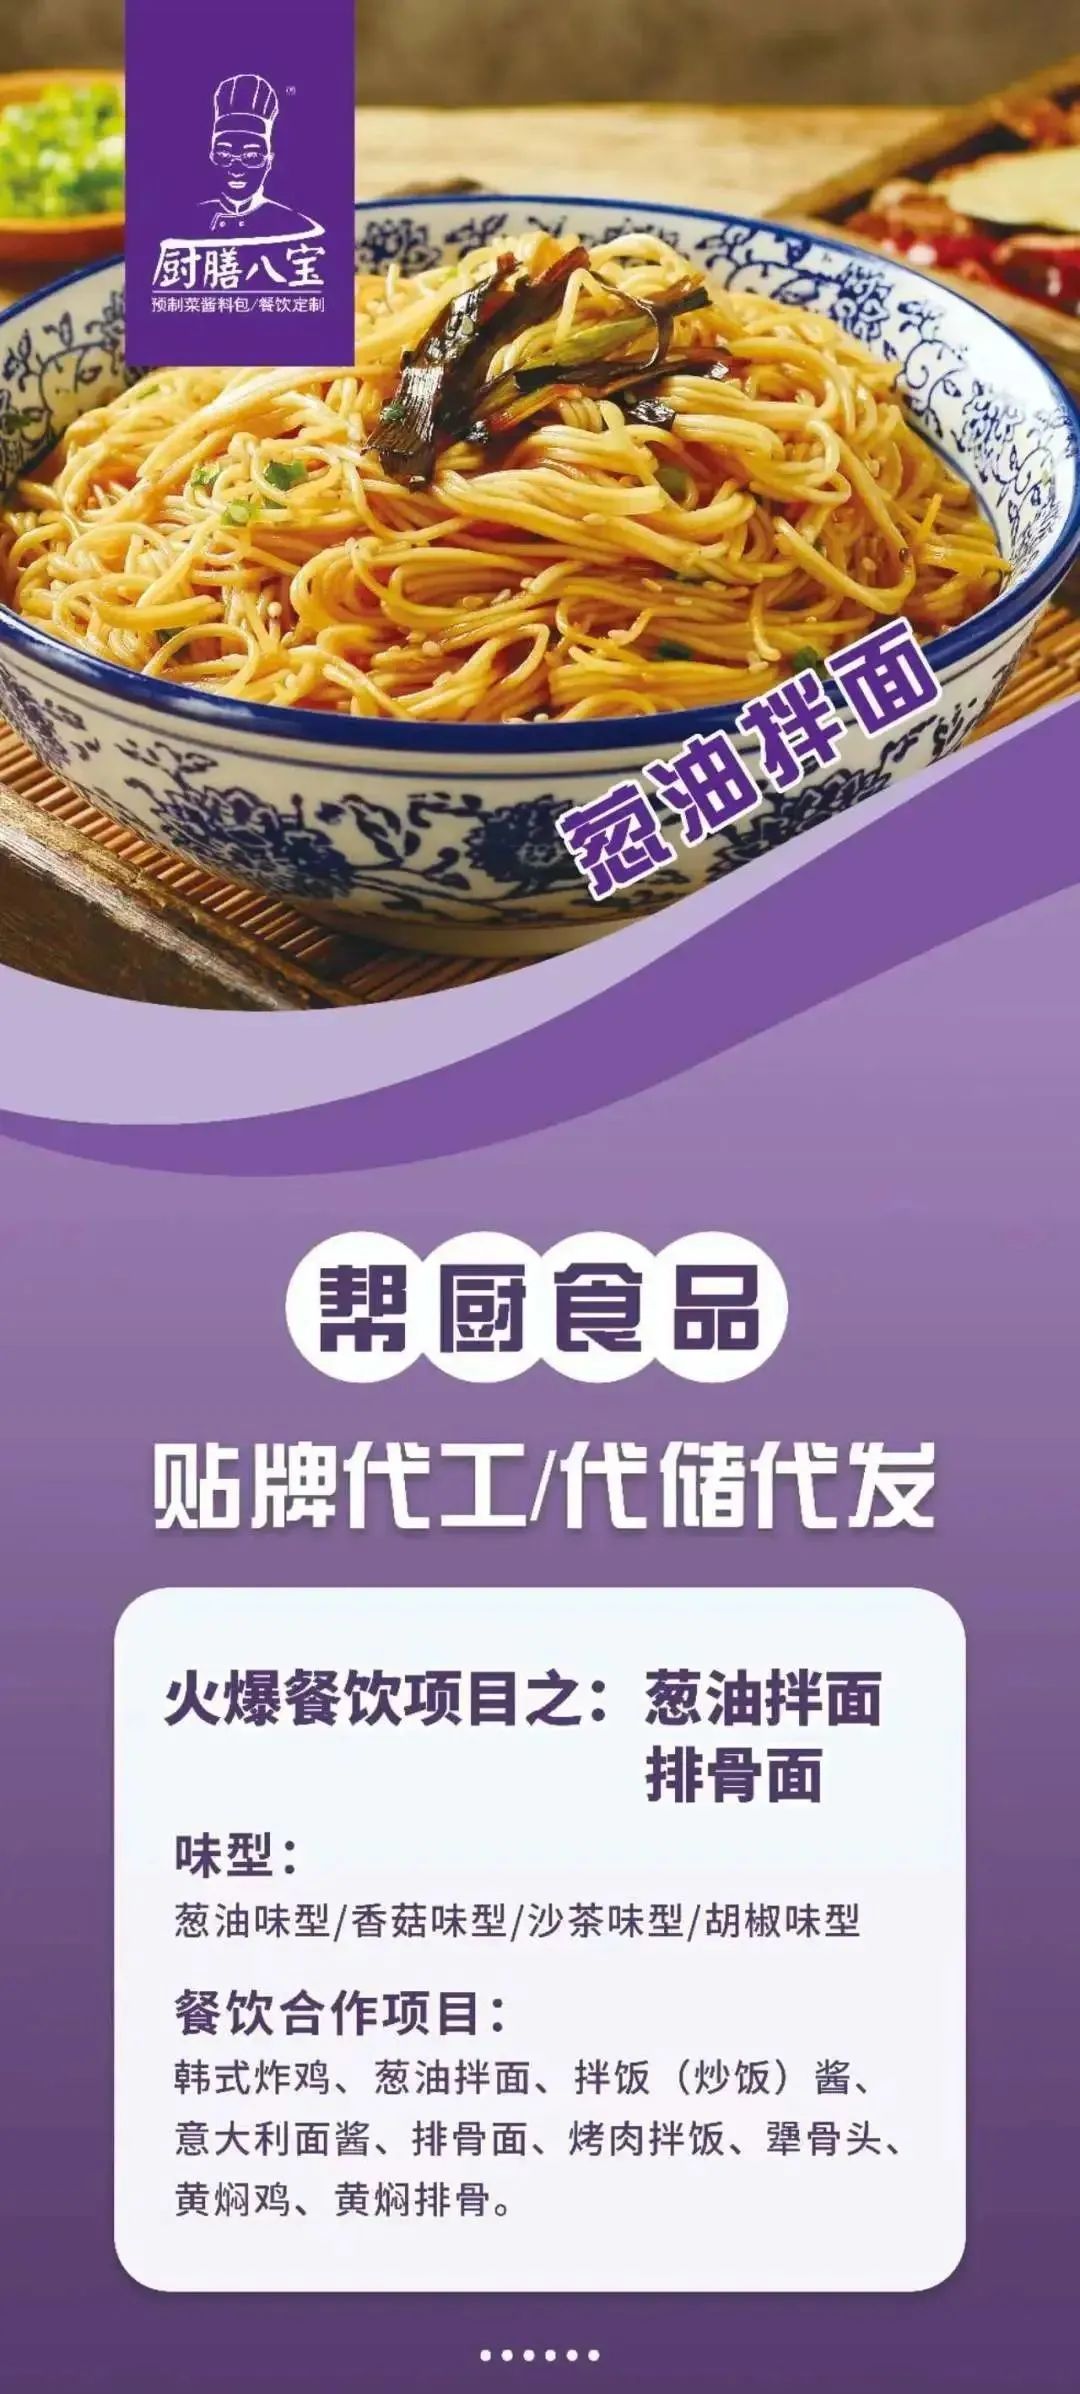 展商推介丨青岛帮厨食品有限公司将携新产品亮相2023北京餐博会(图3)